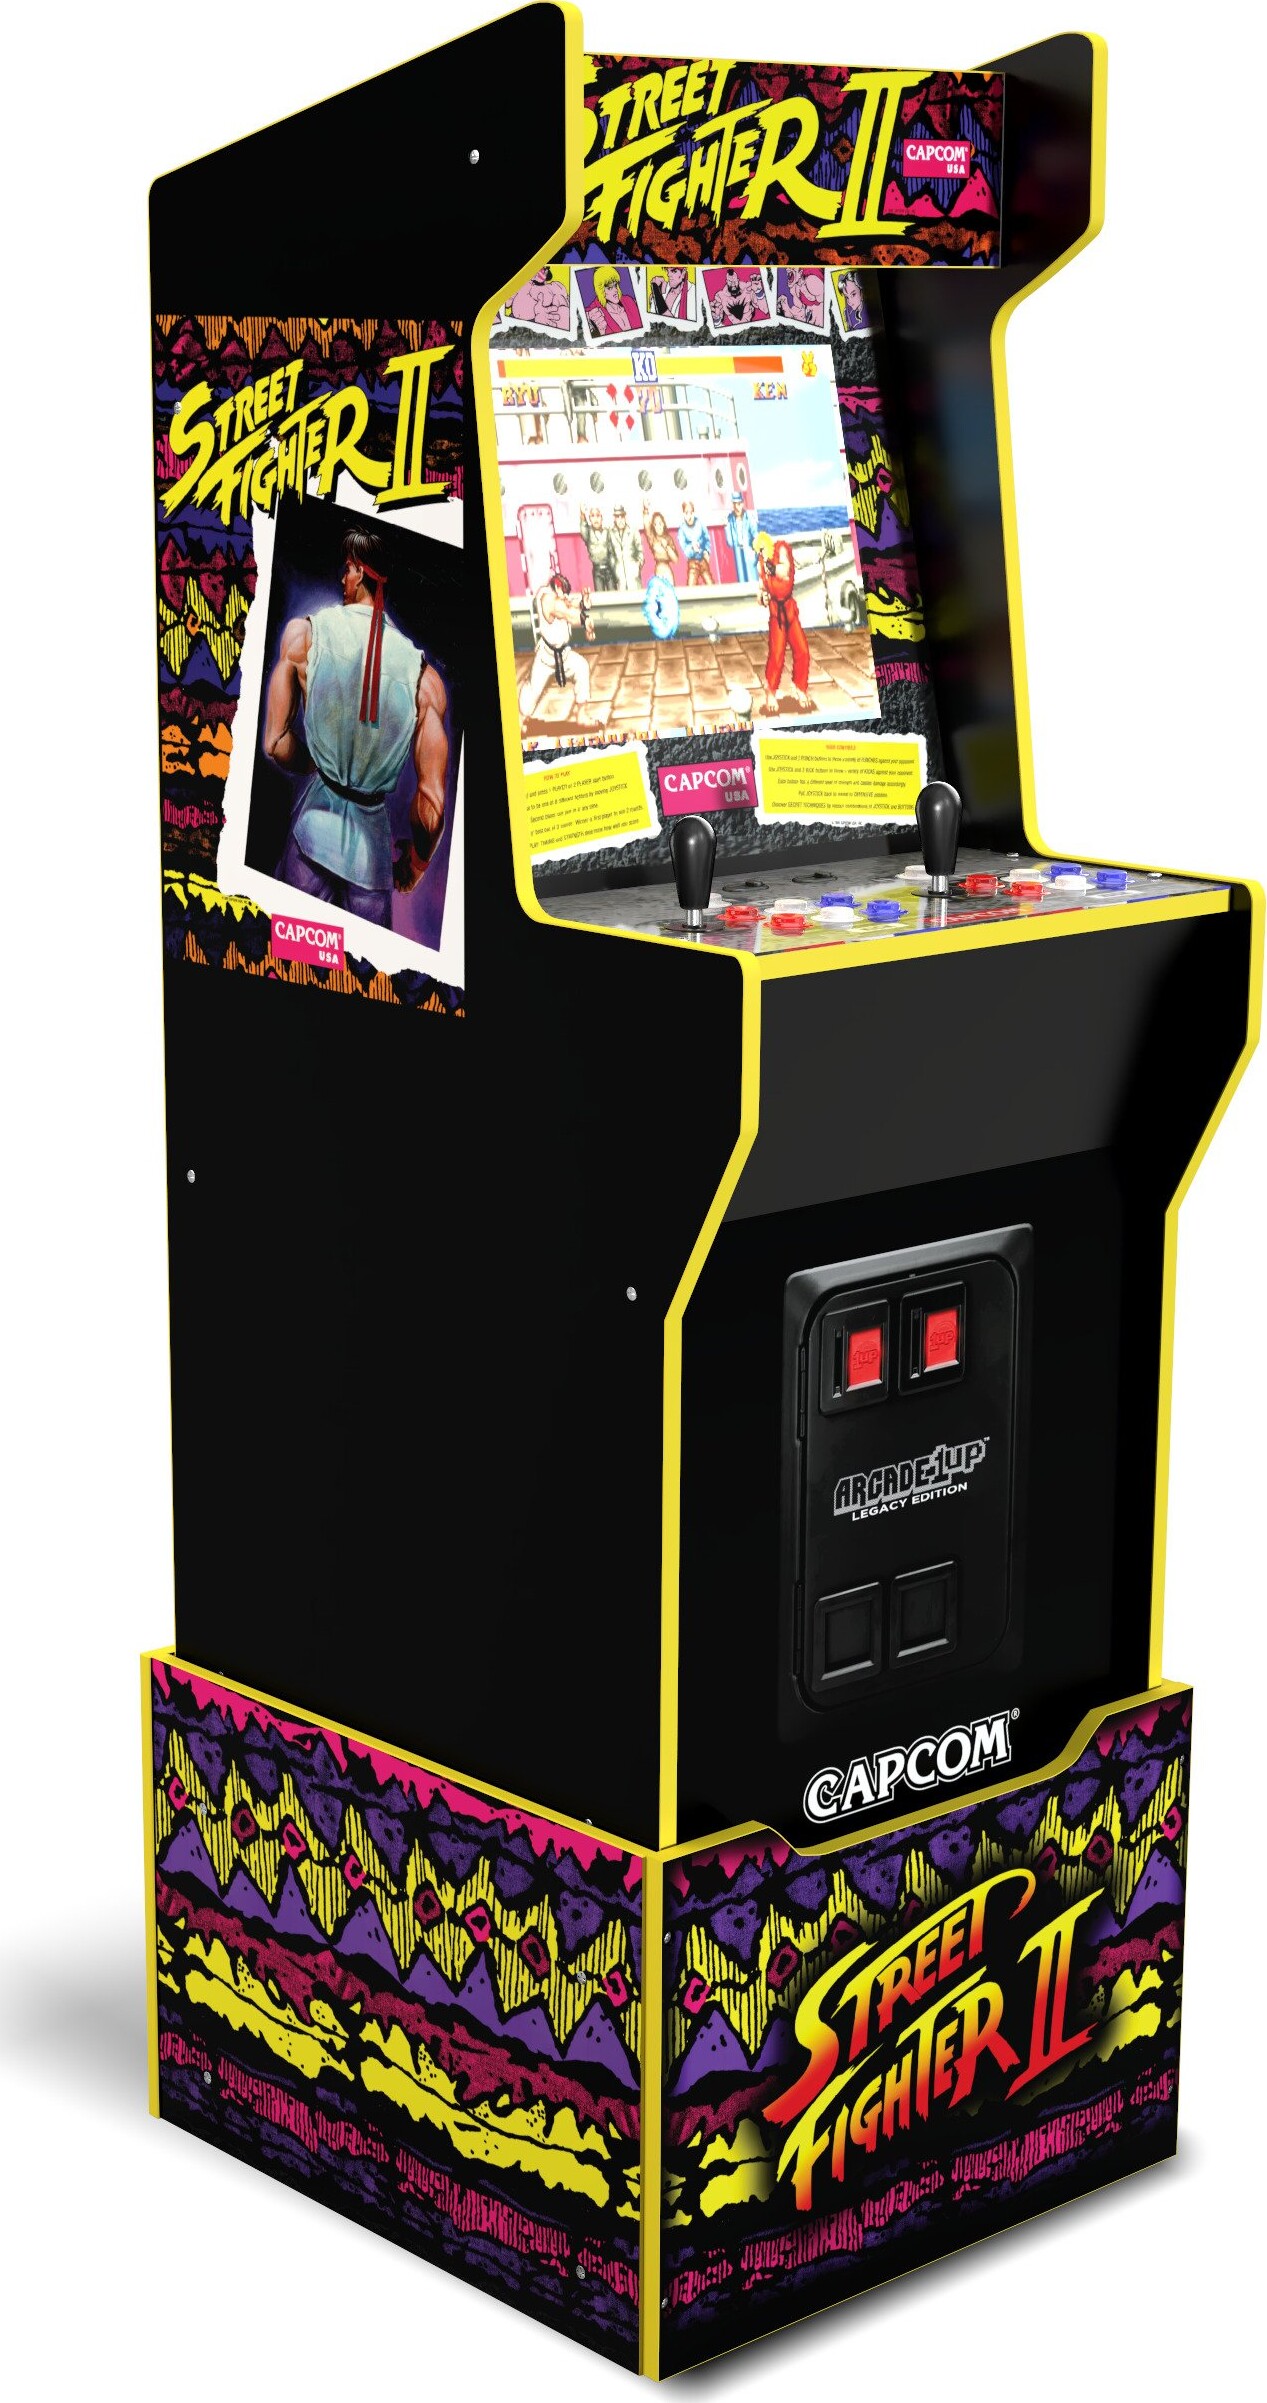 Billede af Arcade1up - Street Fighter Ii Arkadespil - Capcom Legacy